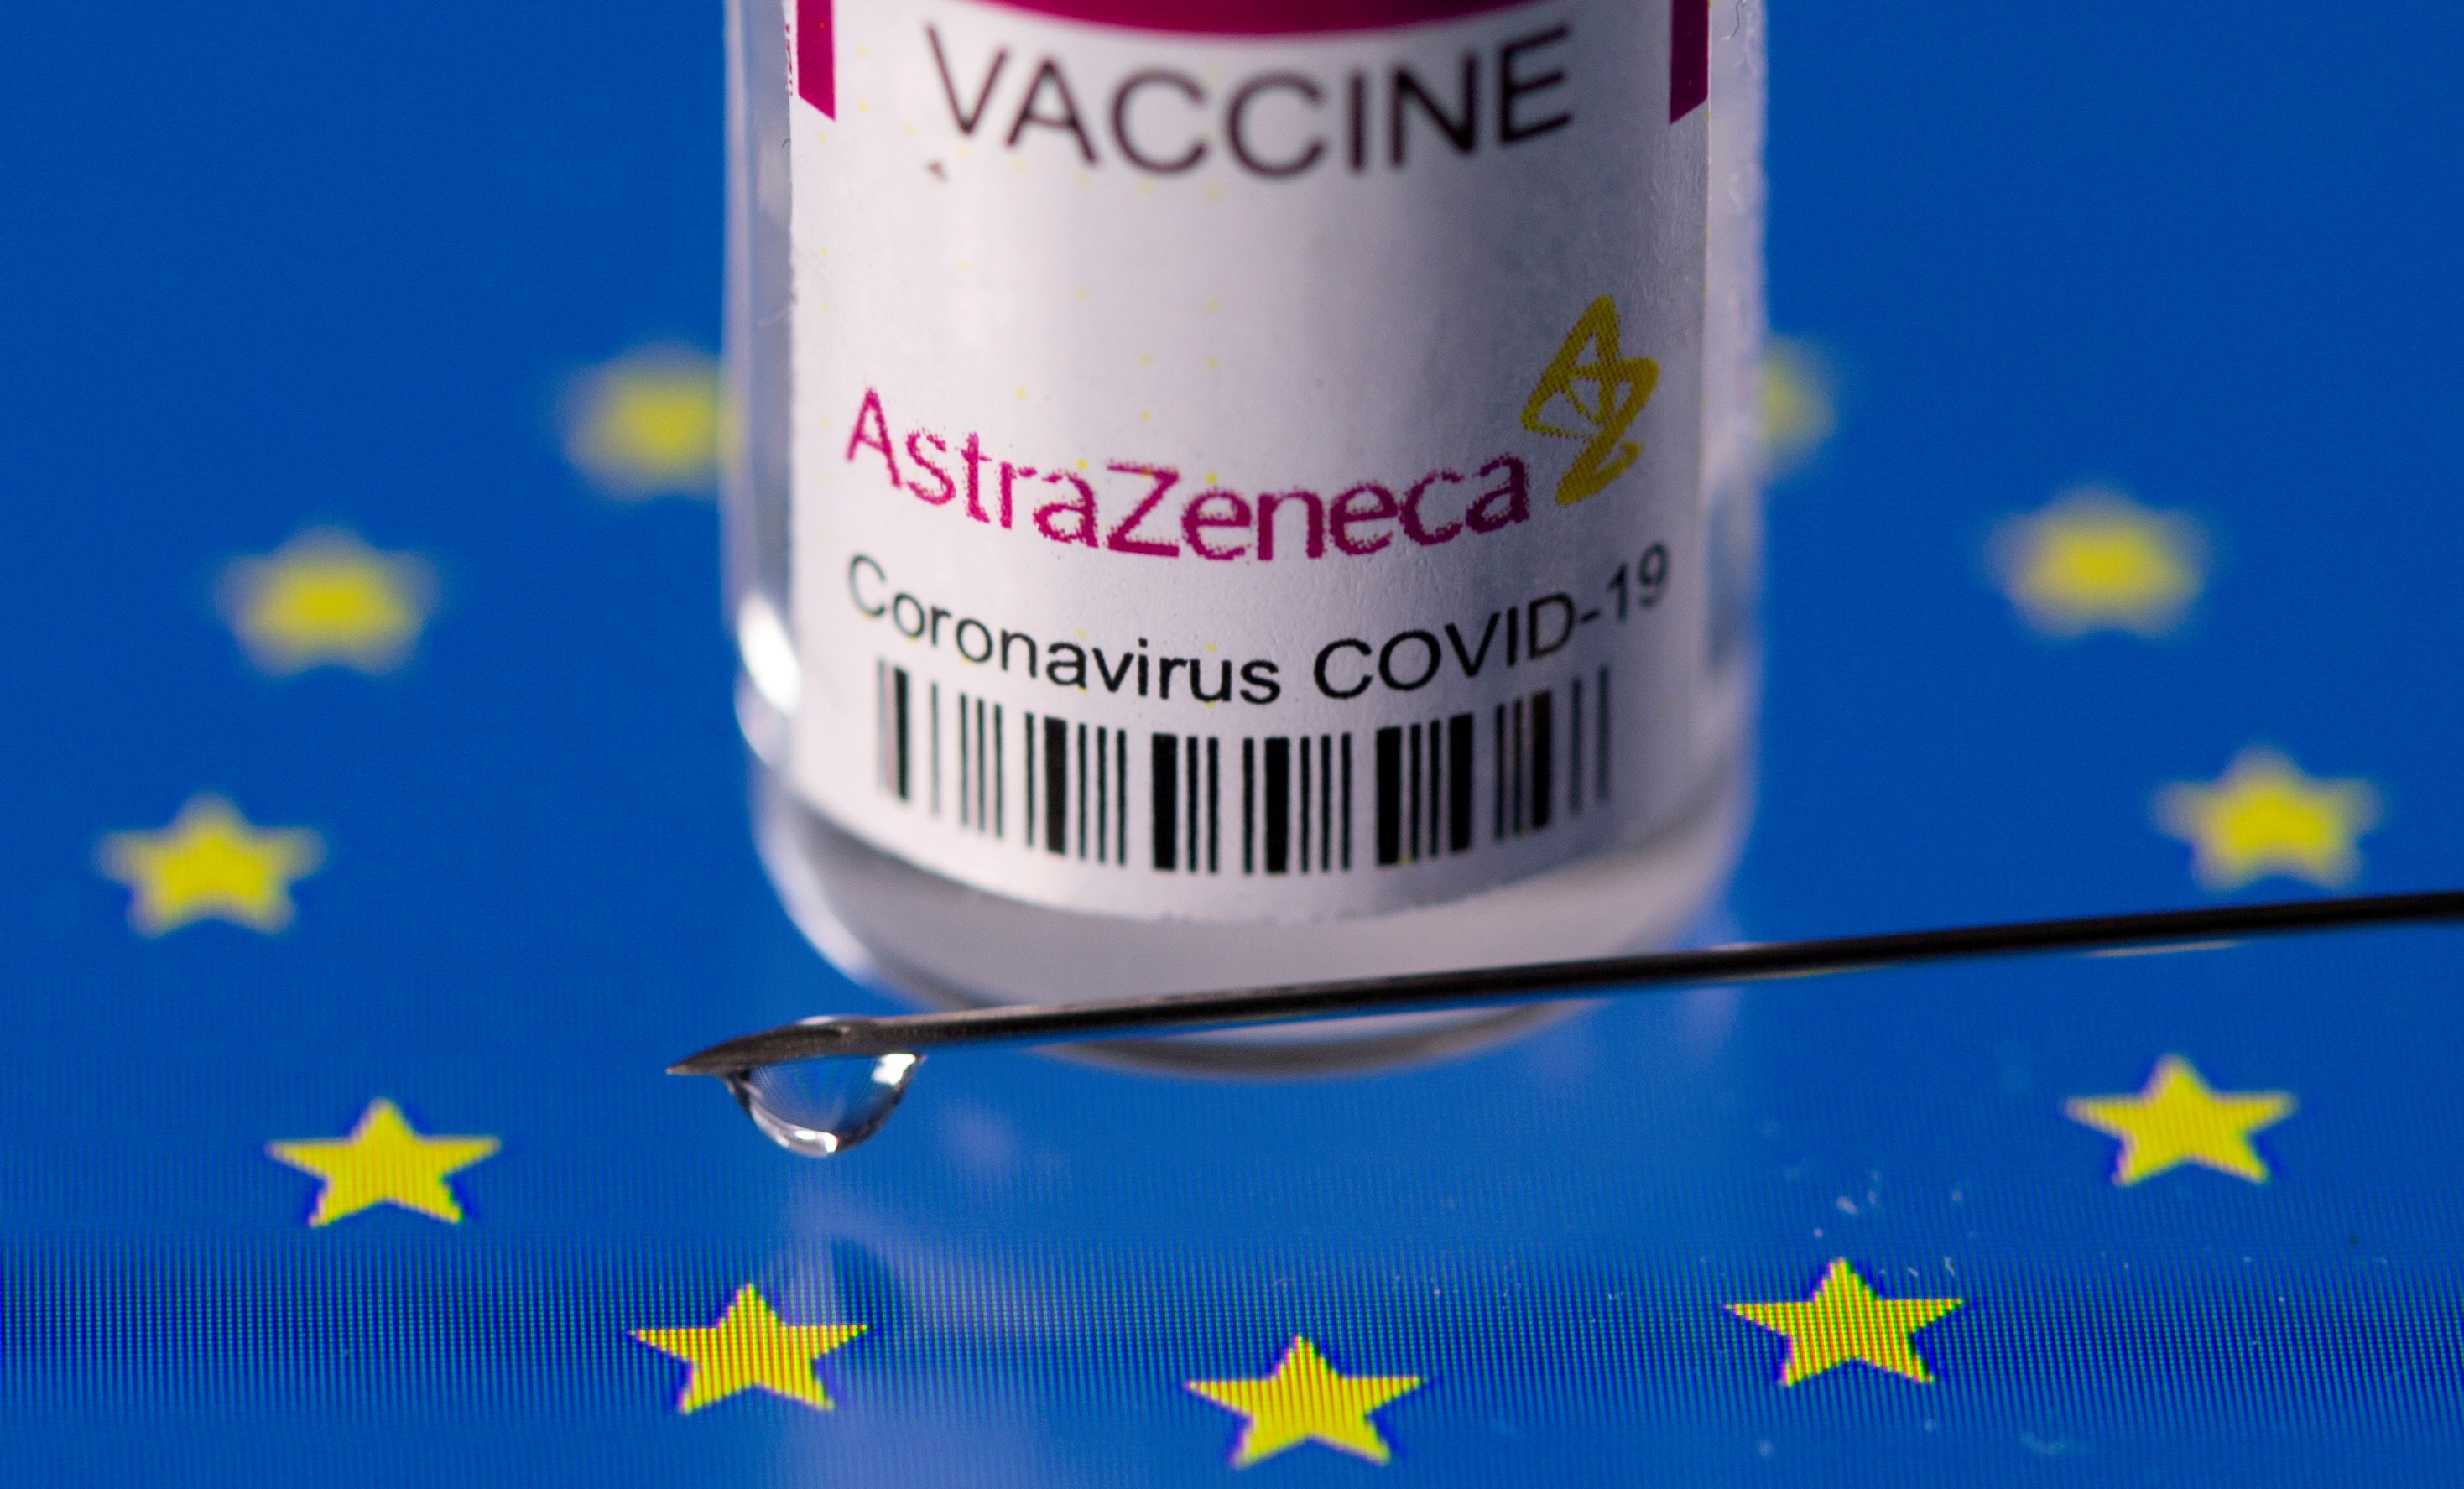 Un responsable de l'Agence européenne du médicament suggère d'abandonner le vaccin AstraZeneca